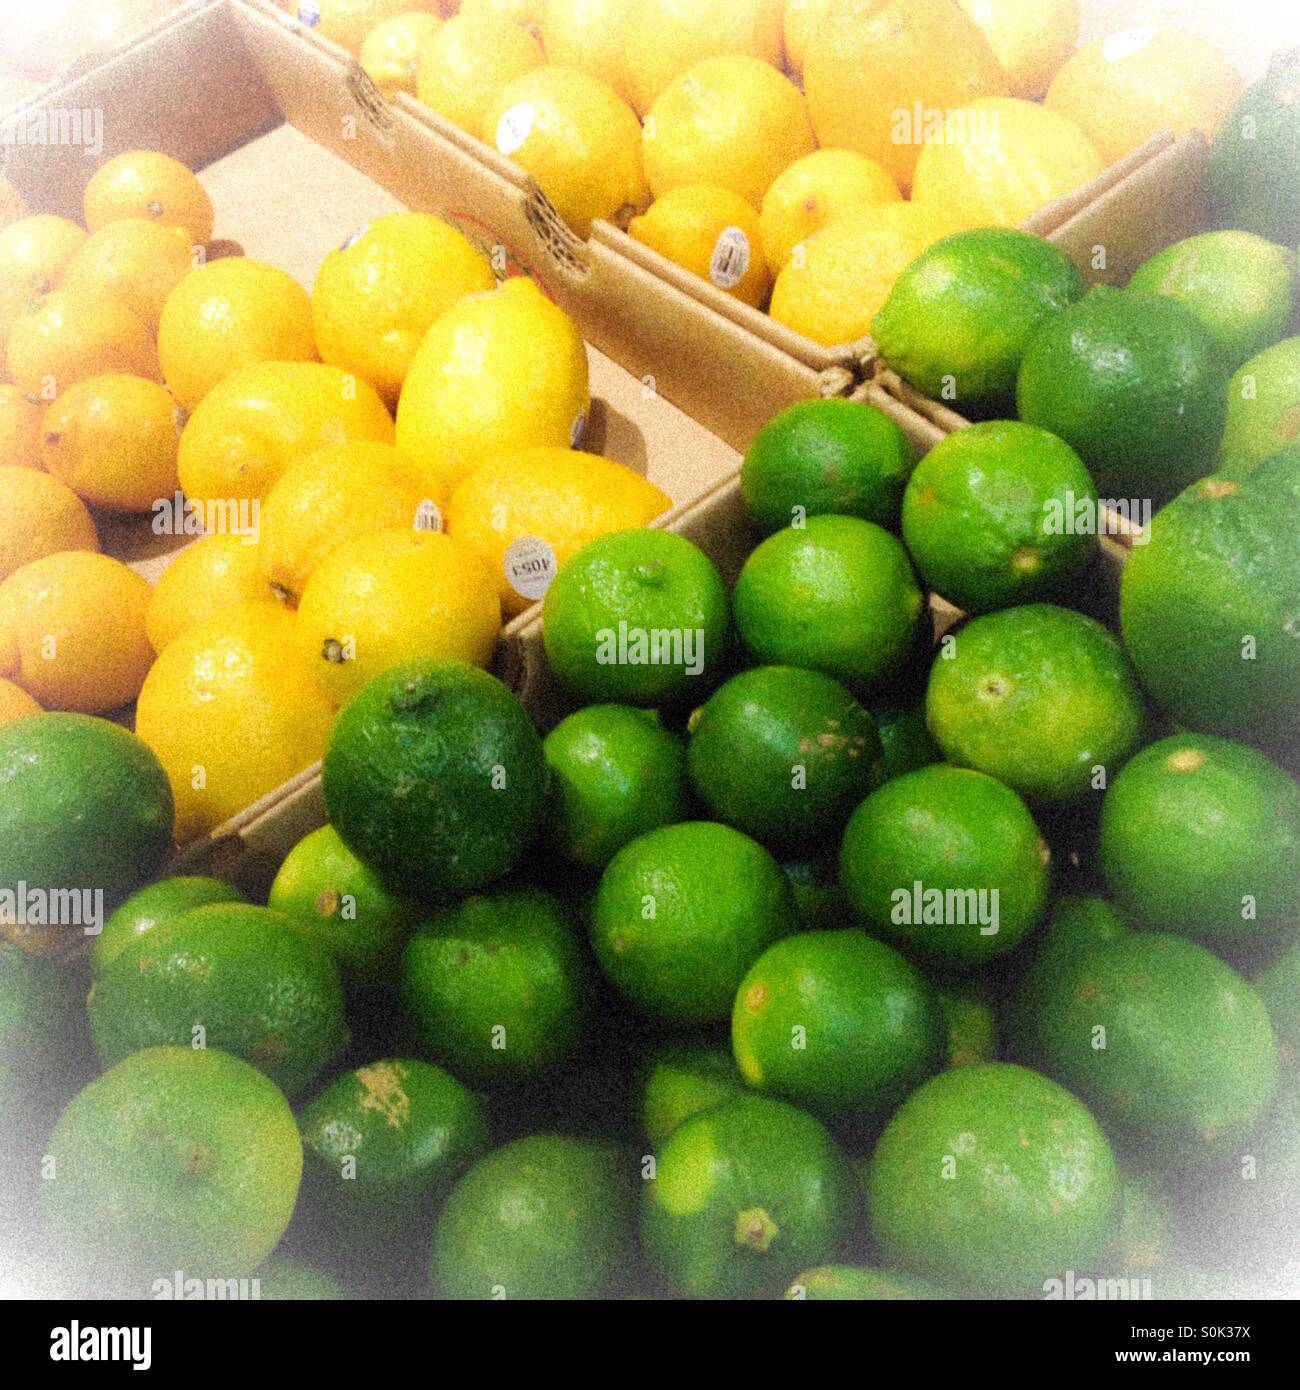 I Limoni e limette al supermercato negozio di alimentari con un vintage vignette filtrata sentire. Il giallo e il verde degli agrumi produrre sano. Foto Stock